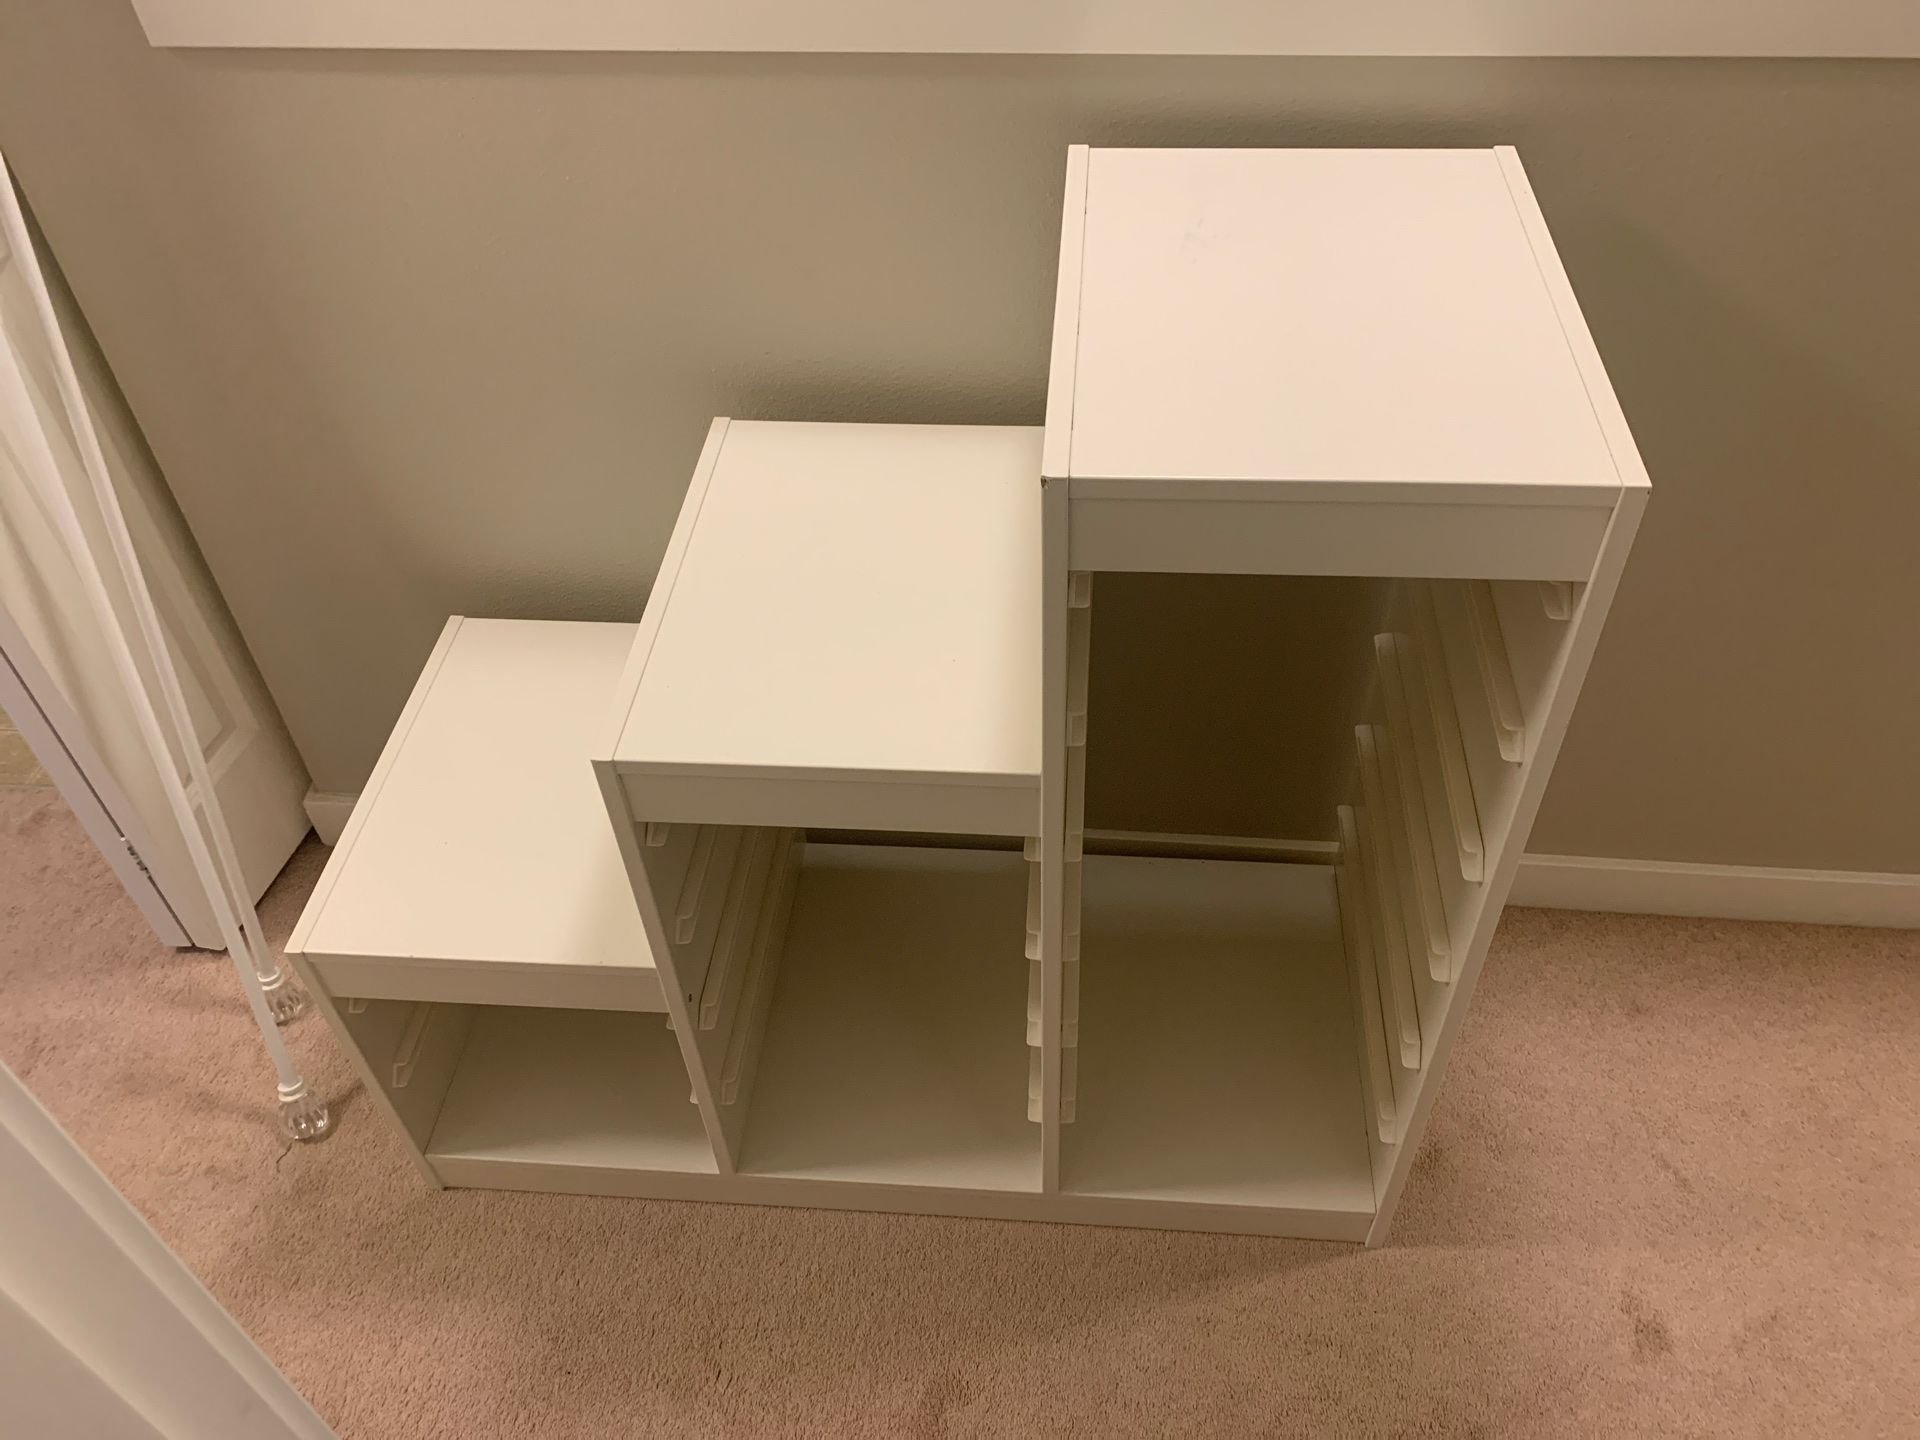 IKEA toy storage unit